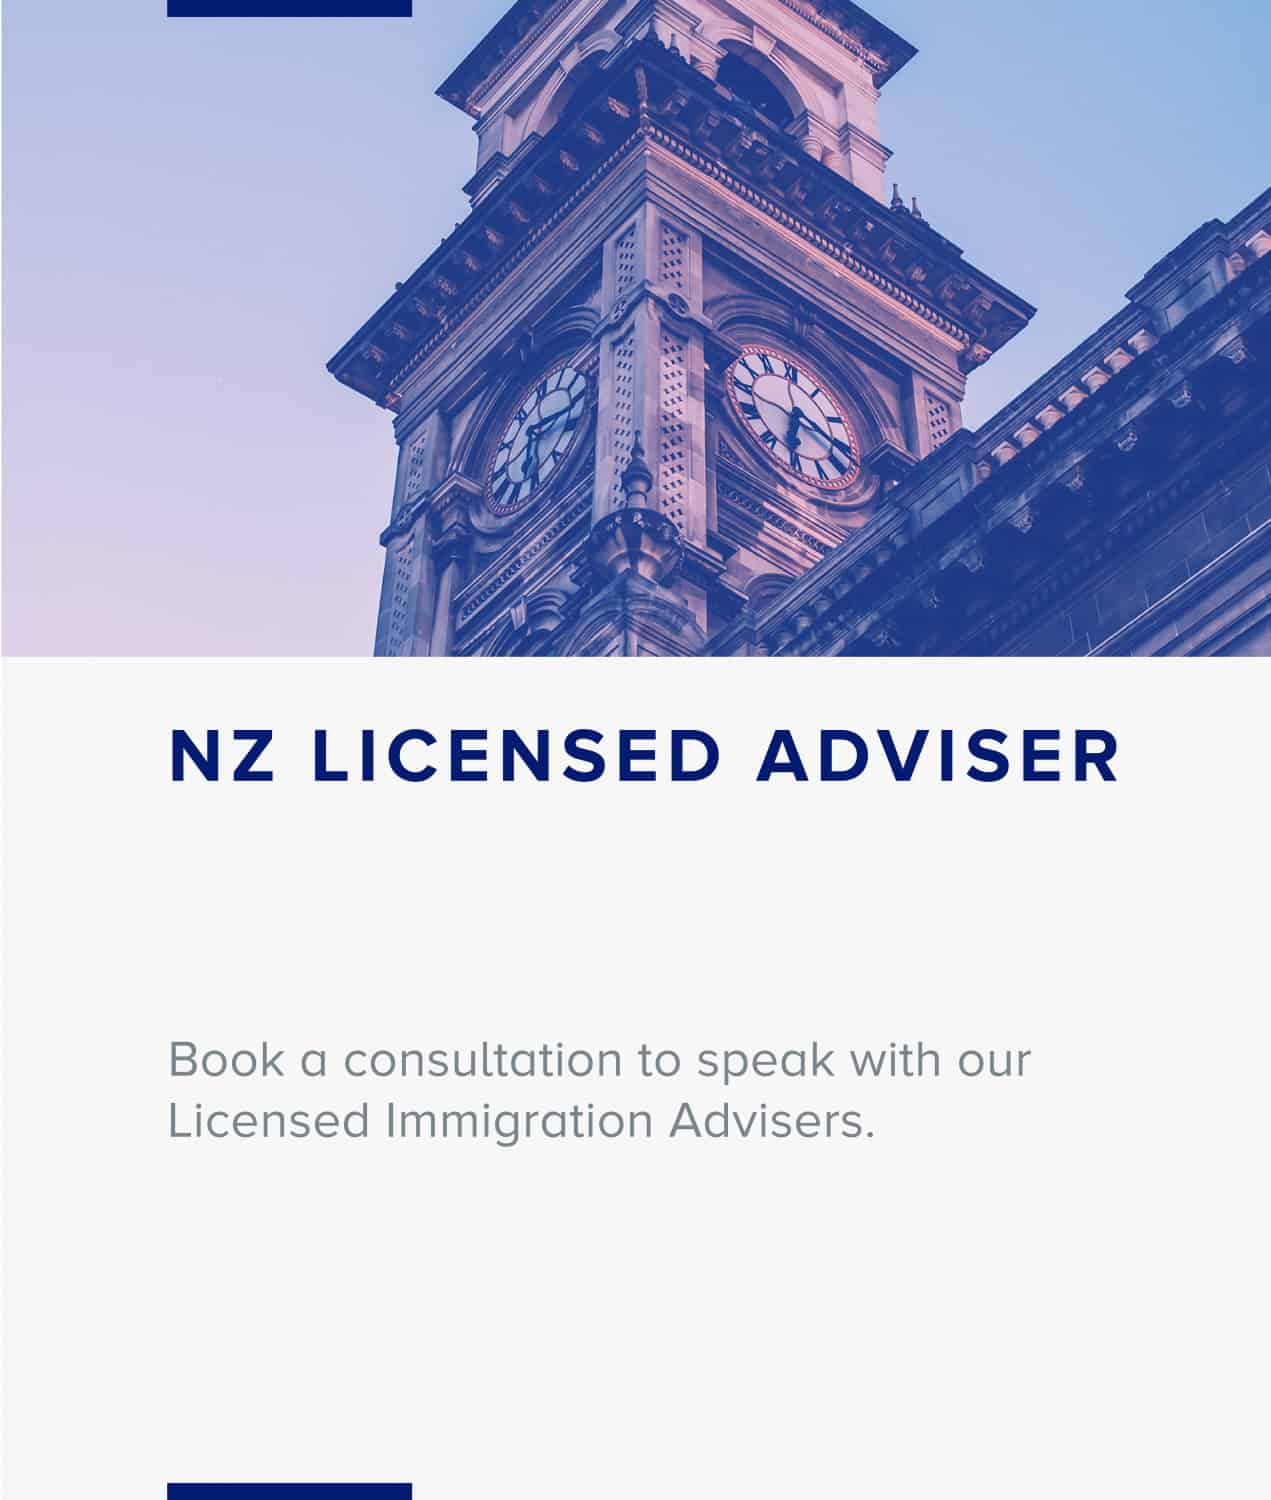 New Zealand Licensed Adviser 1271x1500 